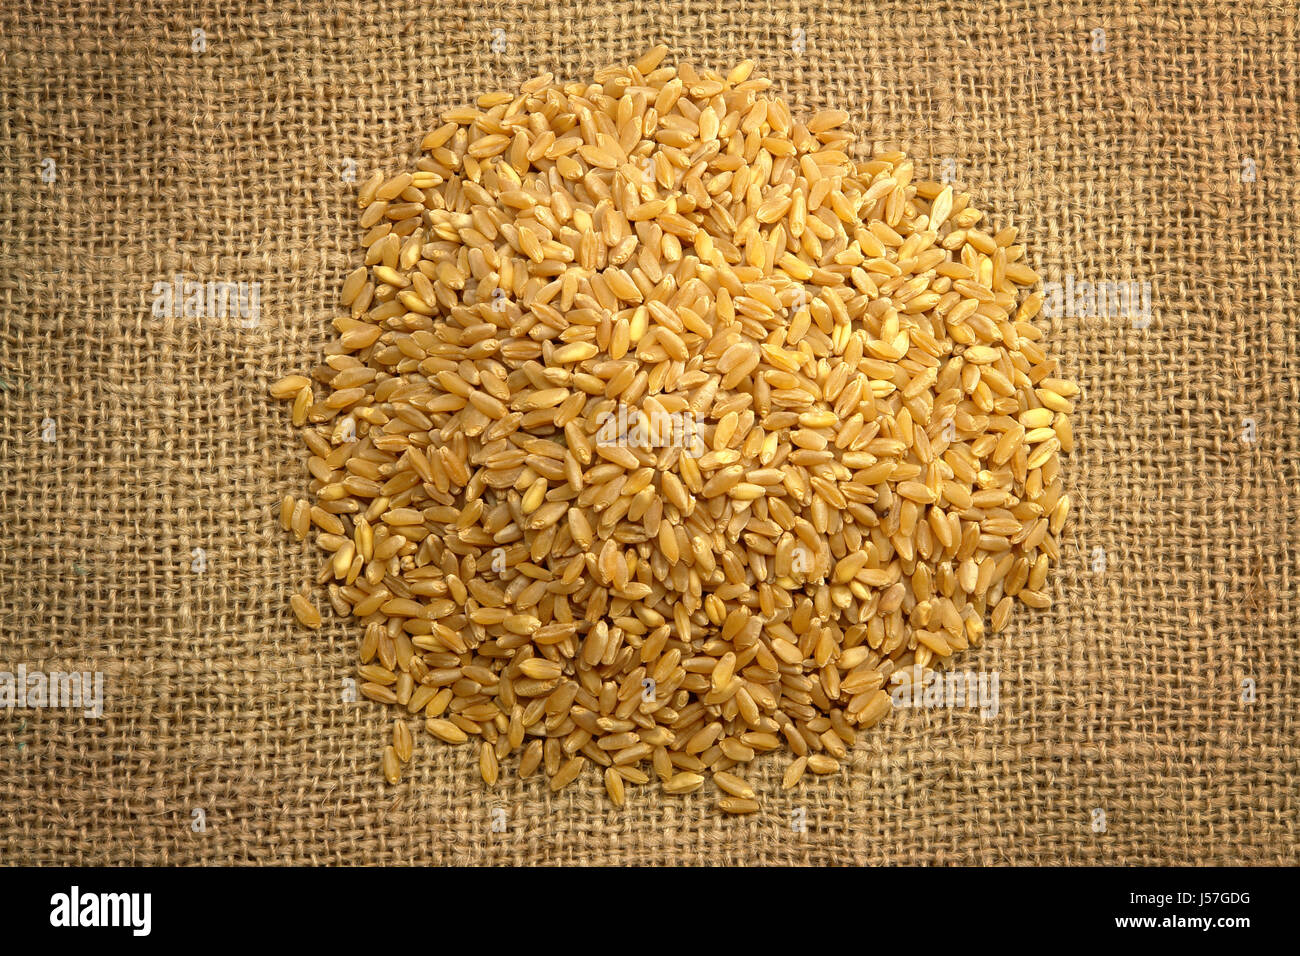 Wheat on Sackcloth Stock Photo